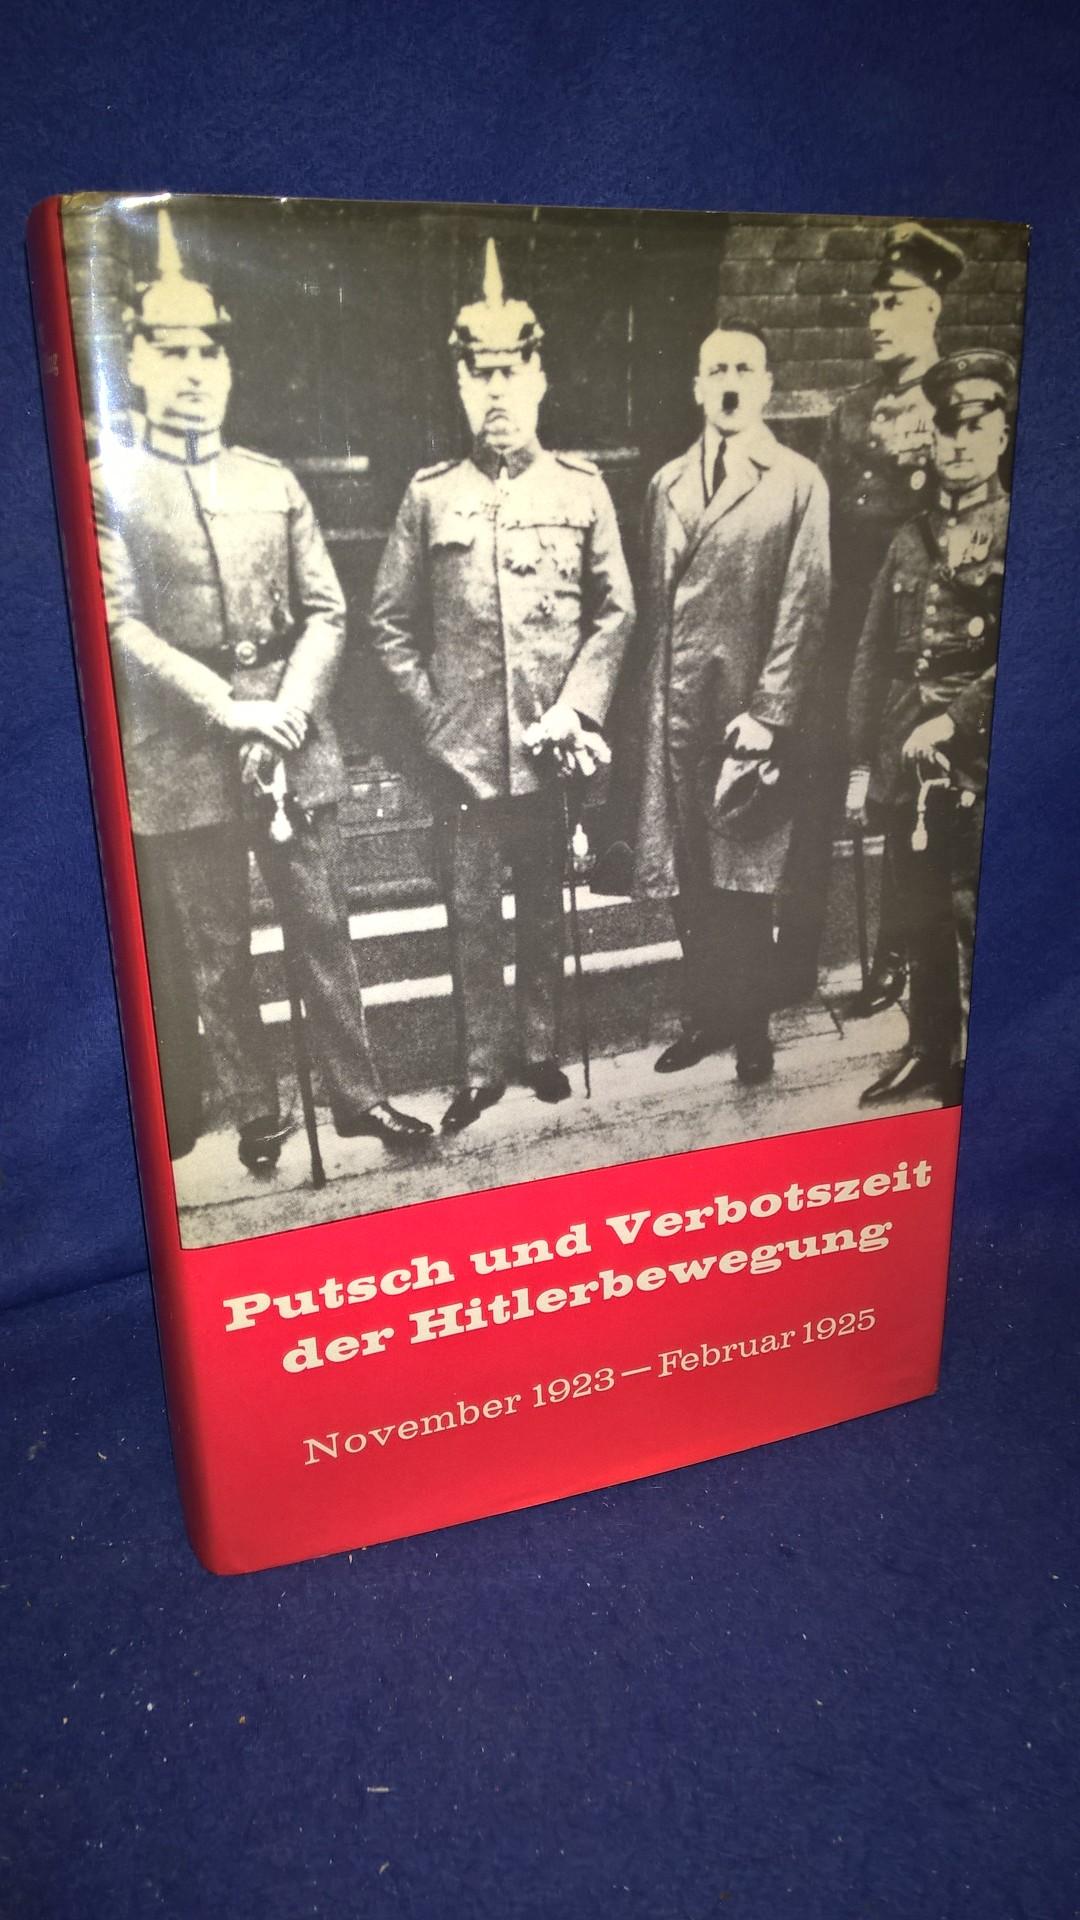 Putsch und Verbotszeit der Hitlerbewegung November 1923 -Februar 1925